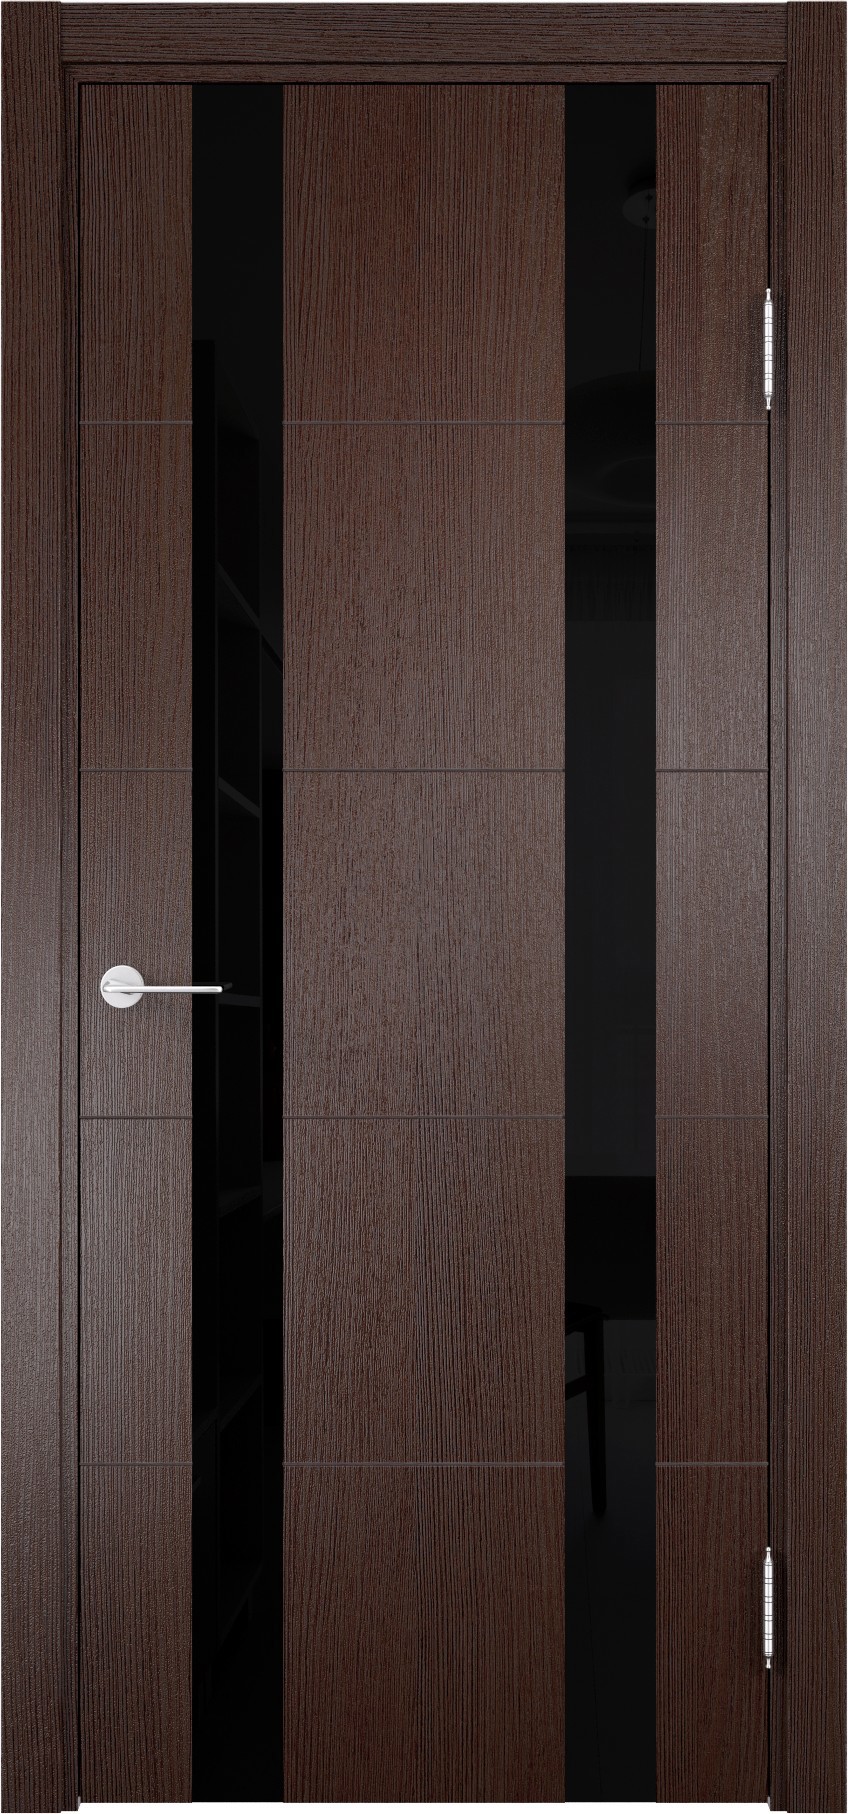 93718161 Дверь межкомнатная Турин (06) остекленная полипропилен цвет дуб графит вералинга 200 x 70 см STLM-0554437 CASAPORTE